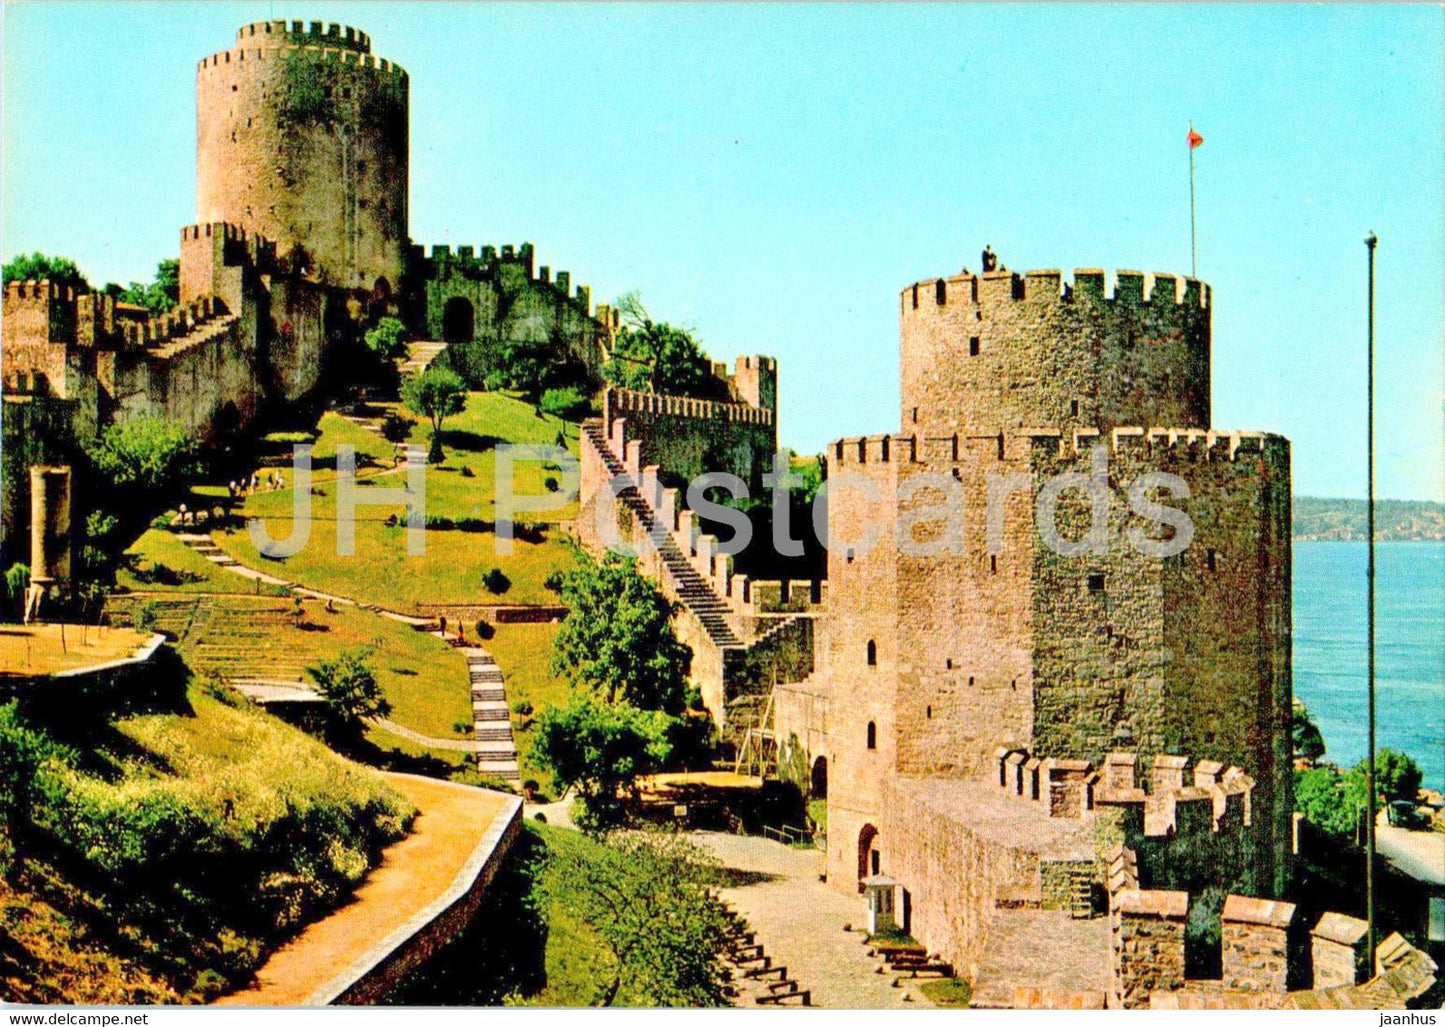 Istanbul - Rumelihisari - fortress - 171 - Turkey - unused - JH Postcards